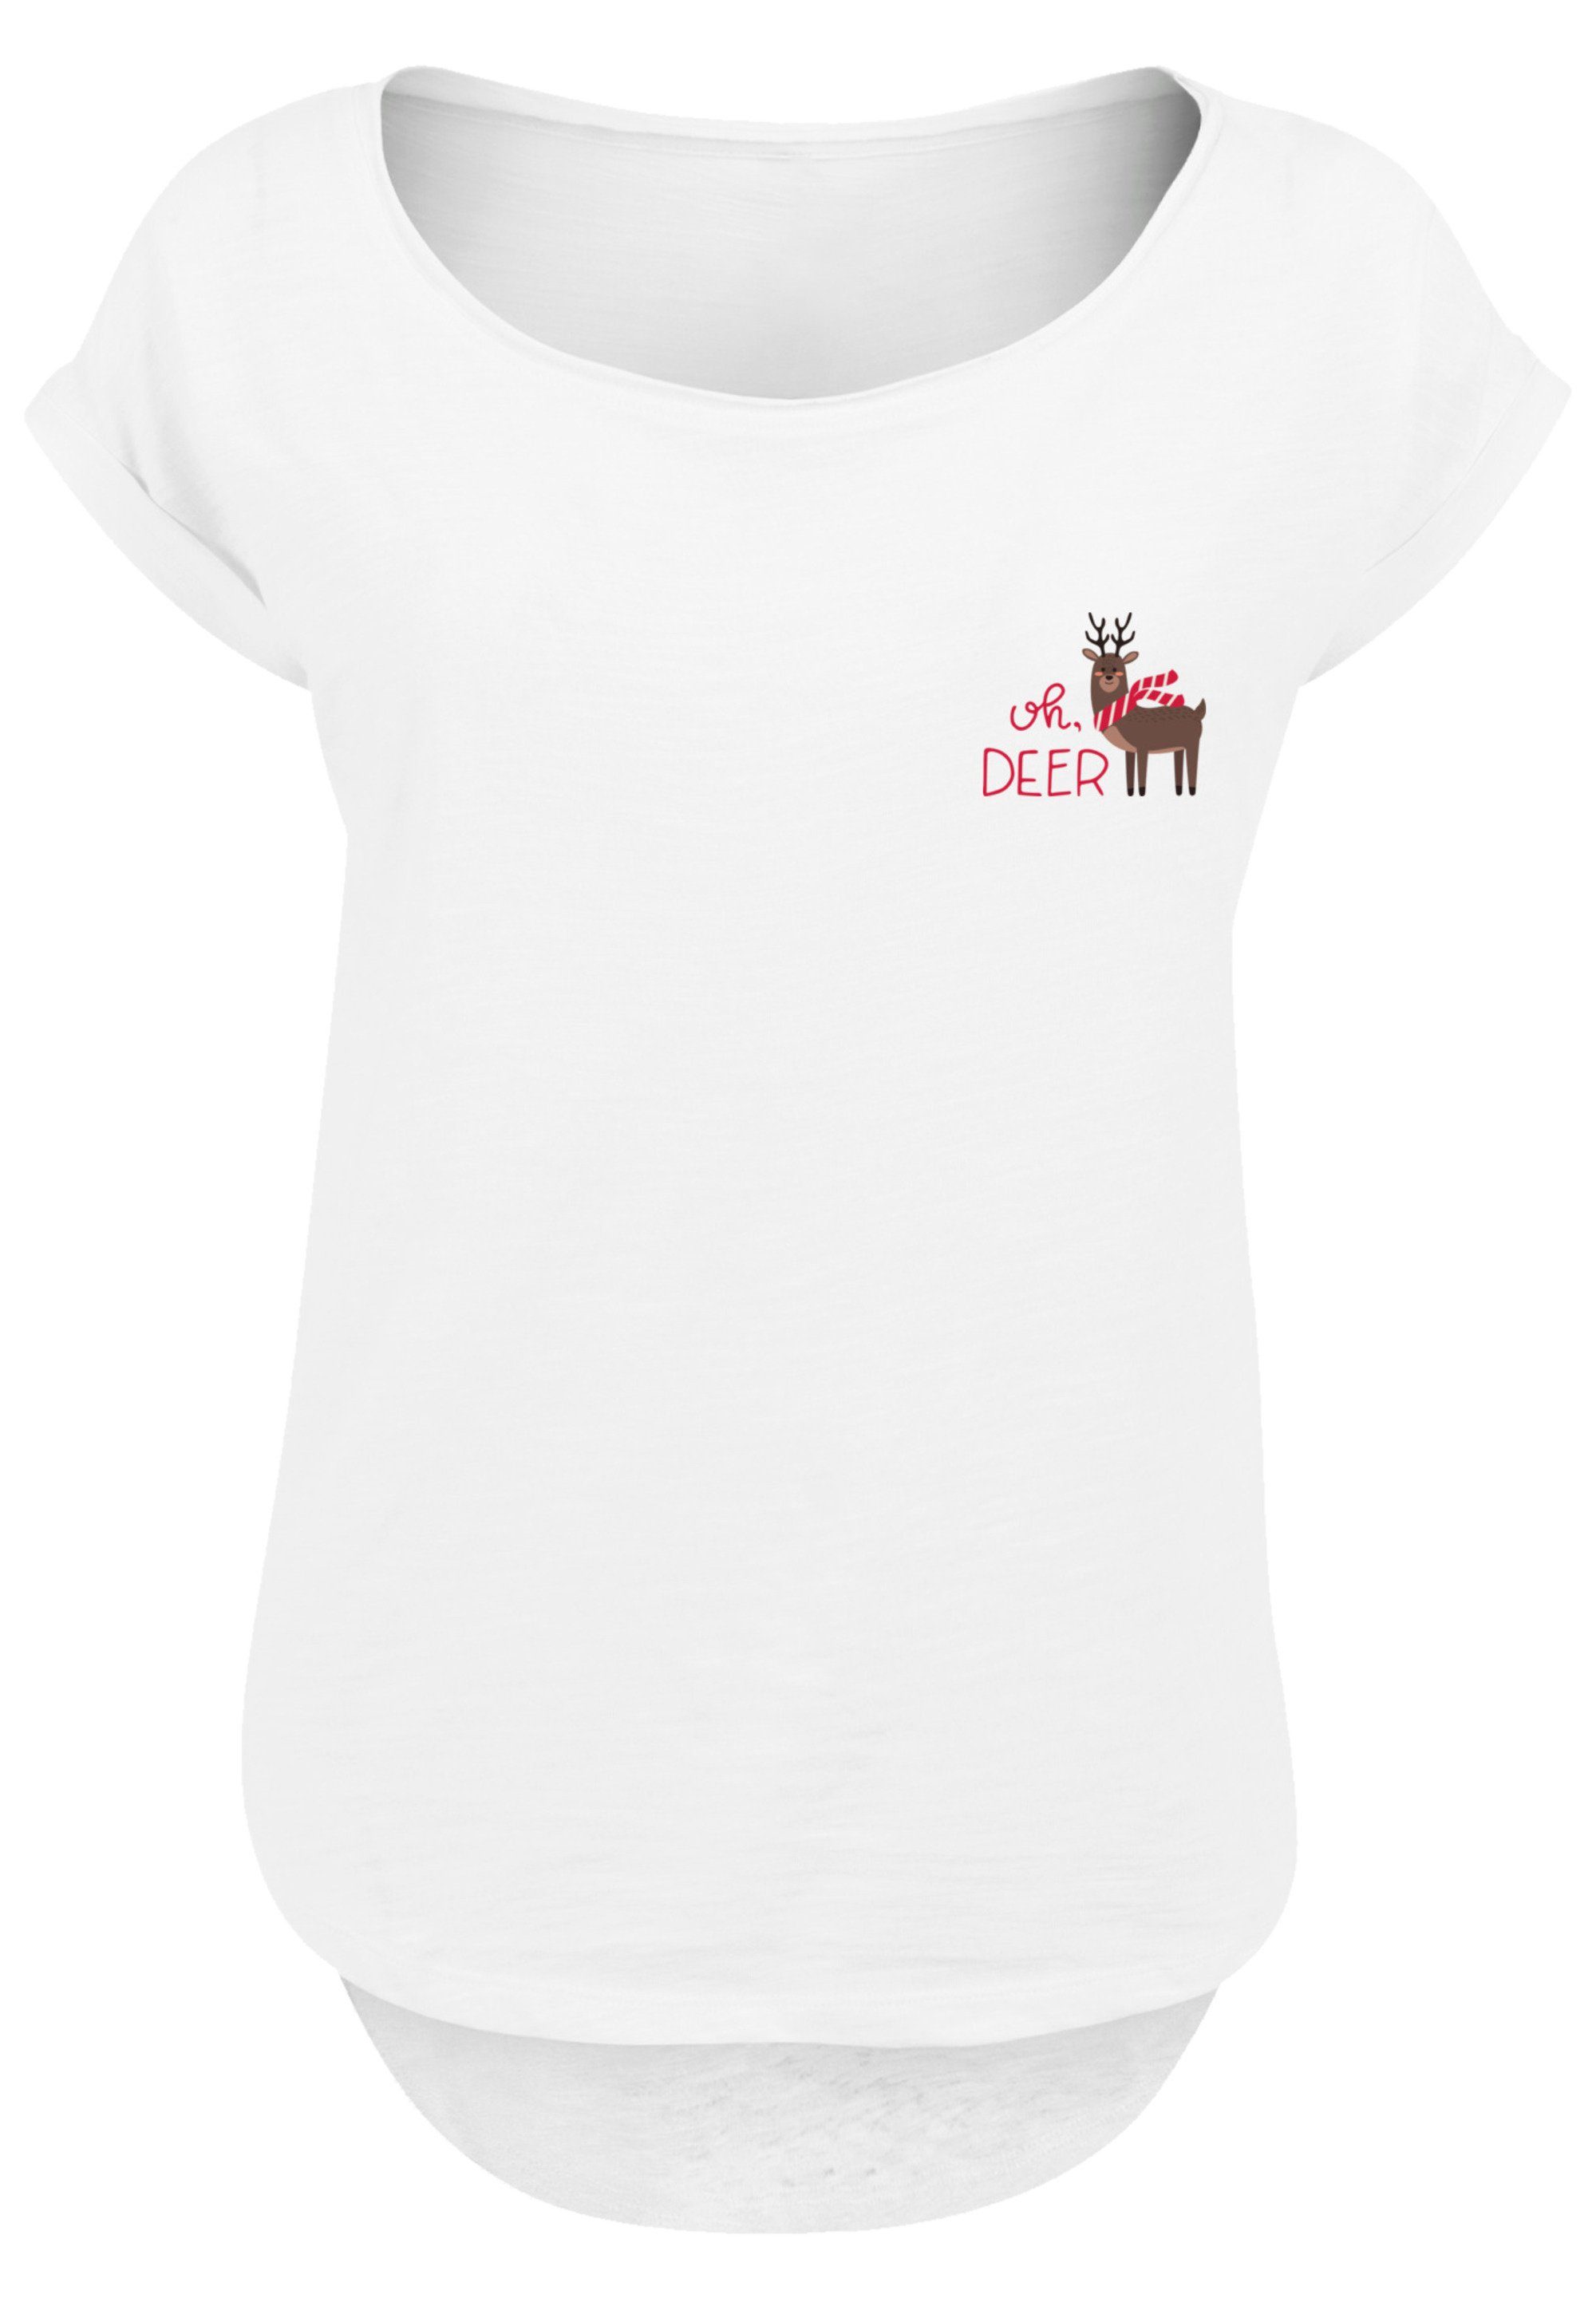 F4NT4STIC T-Shirt Christmas Deer Premium Qualität, Rock-Musik, Band, Sehr  weicher Baumwollstoff mit hohem Tragekomfort | T-Shirts